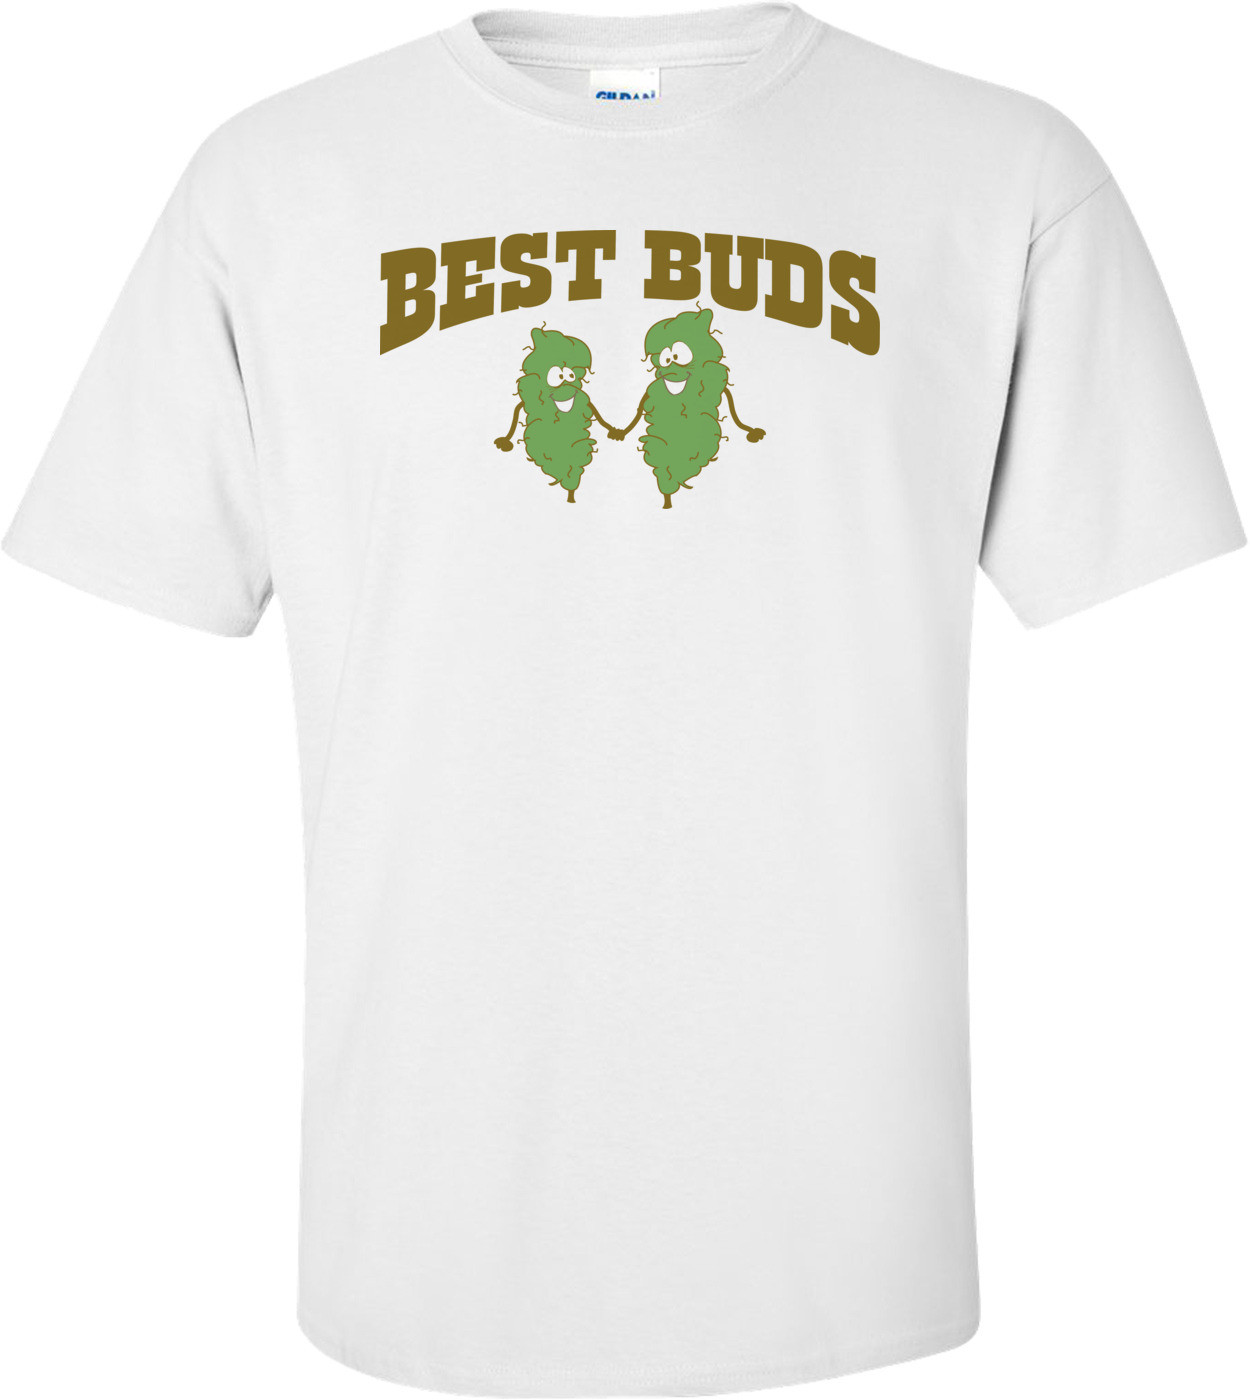 Best Buds T-shirt 